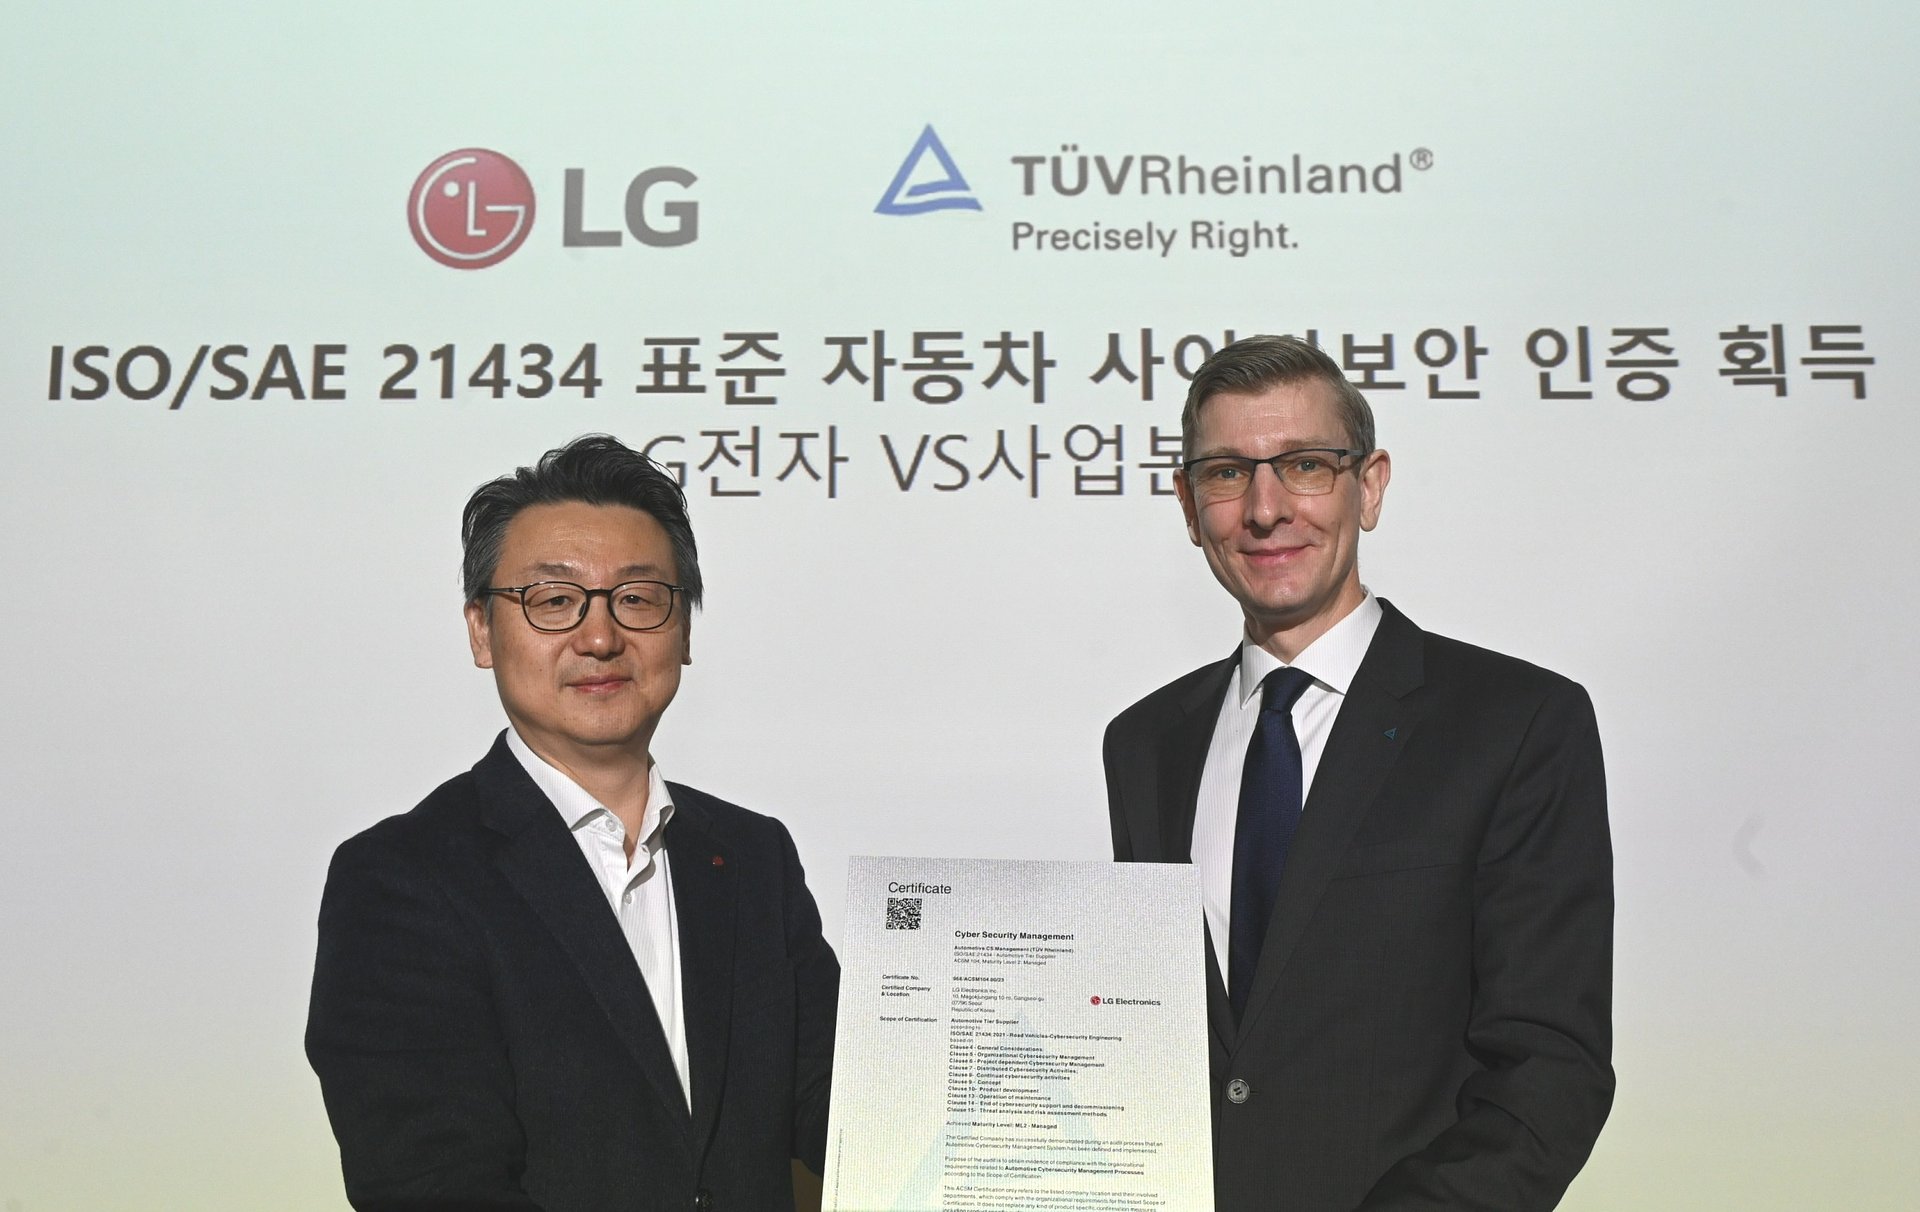 LG spełnia najnowszy światowy standard cyberbezpieczeństwa pojazdów